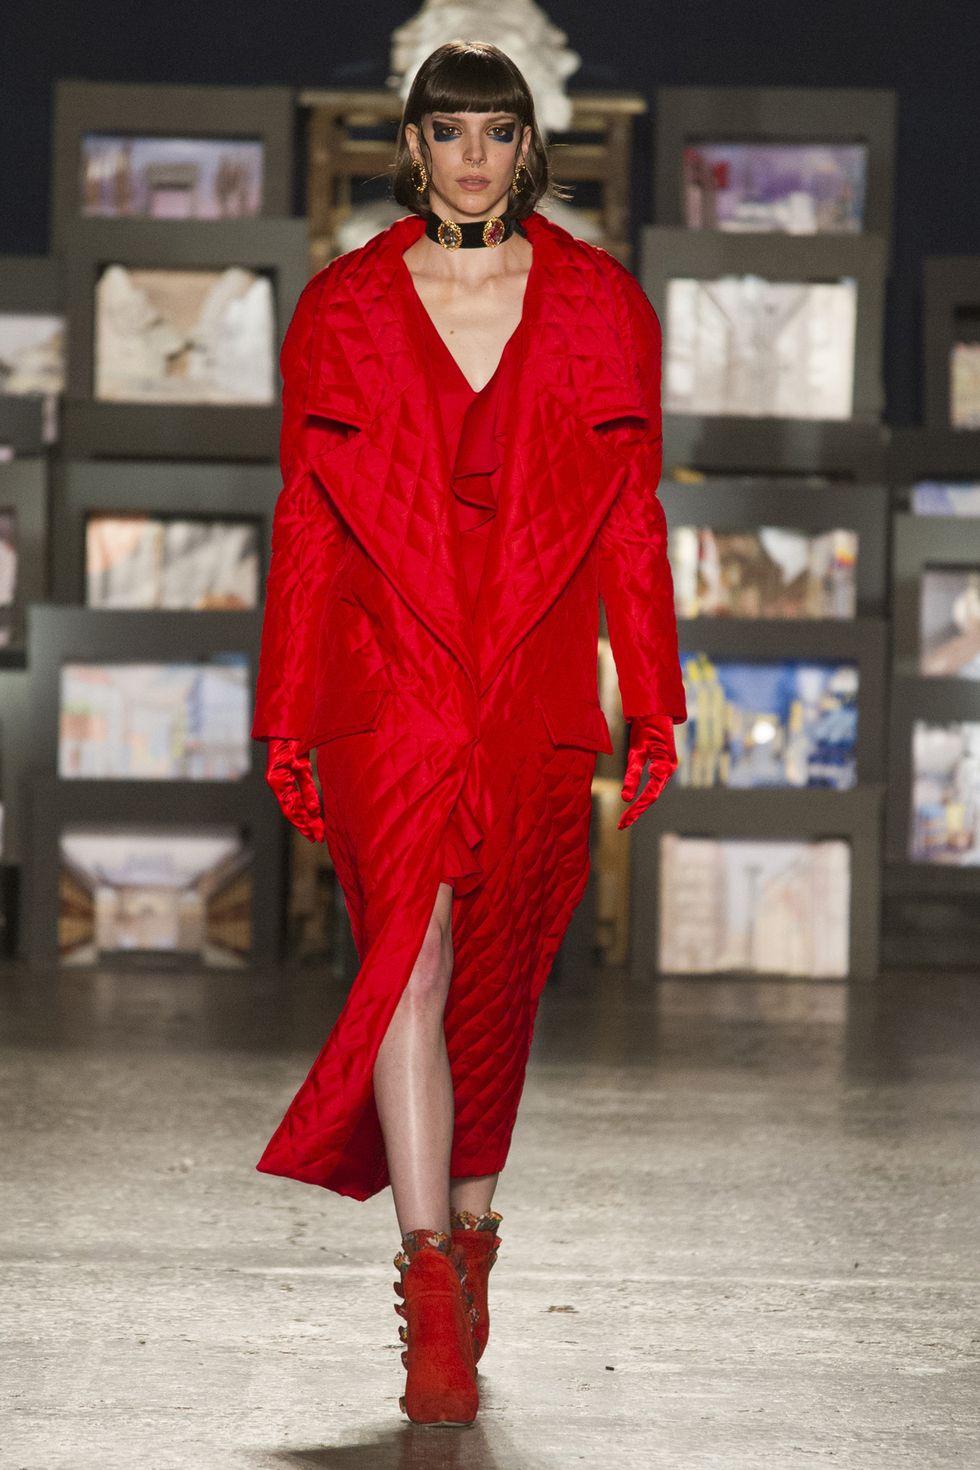 Il colore rosso è la tonalità mantra del prossimo inverno 2017-2018: avvistato praticamente ovunque durante la Milano Fashion Week, saprà accendere vestiti e abiti di ogni tuo look.